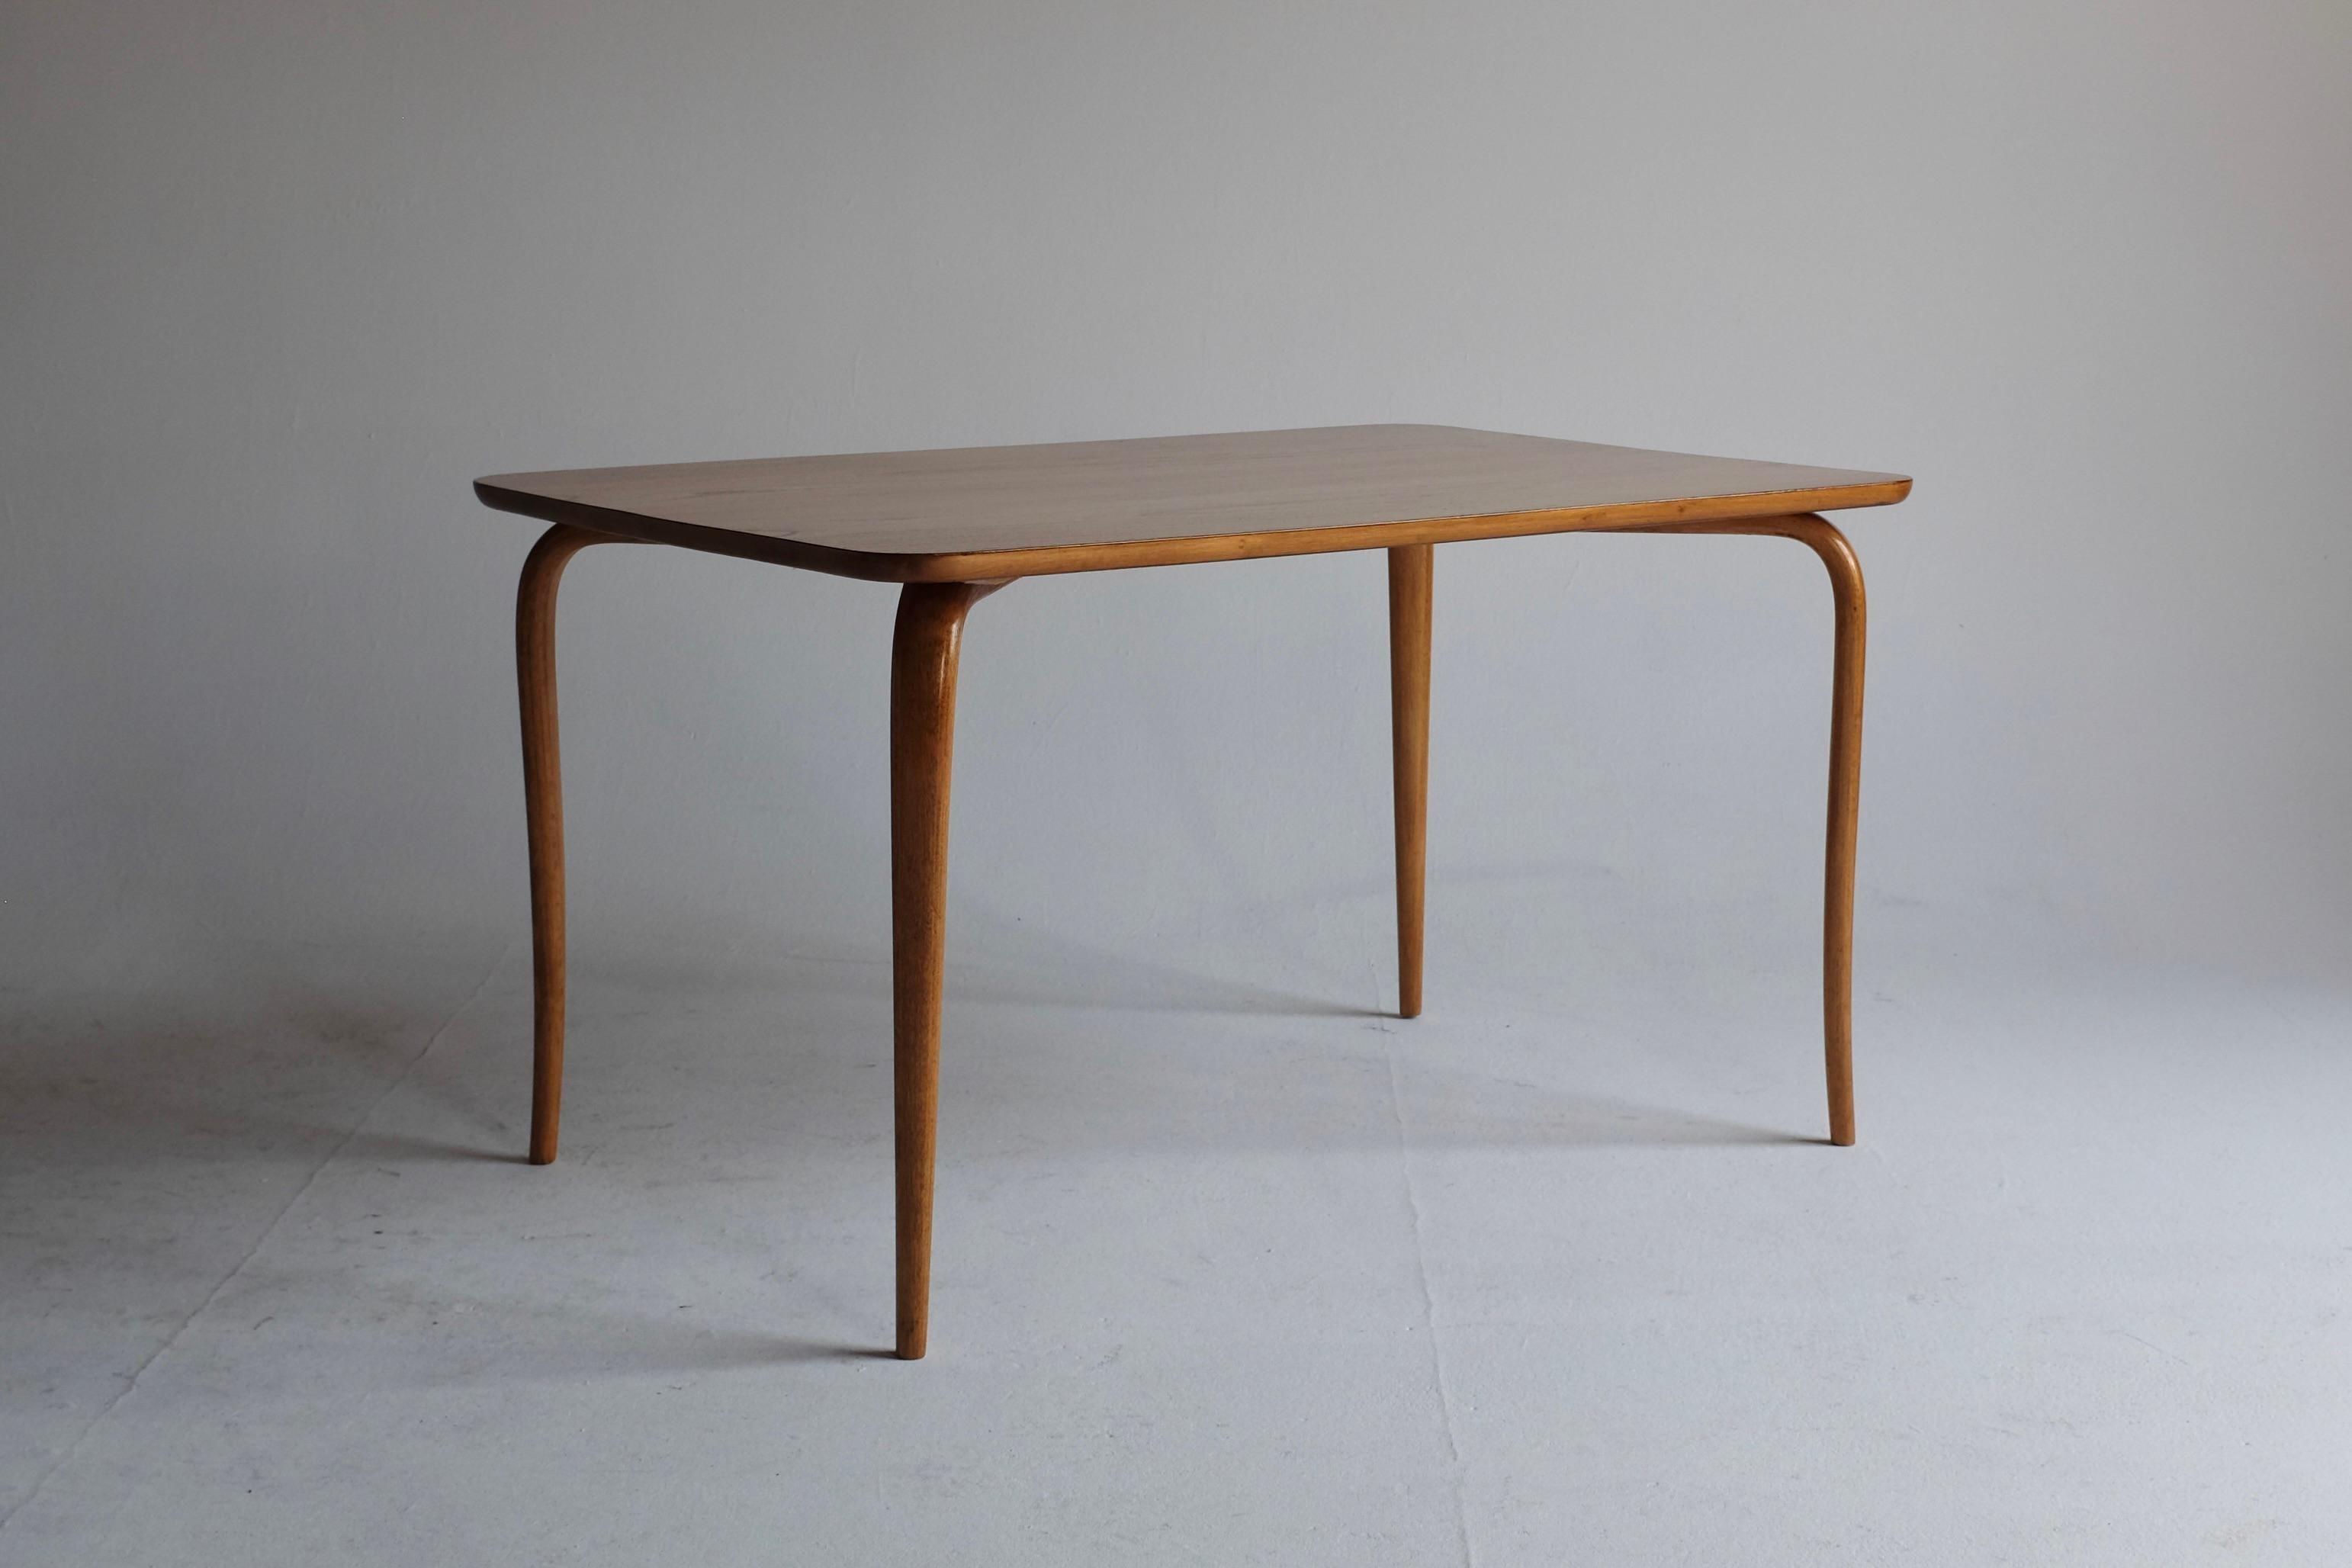 Table d'appoint des années 1950 par Bruno Mathsson pour Firma Karl Mathsson, Värnamo, Suède. Conçue en 1942, cette table est dotée de pieds courbes caractéristiques, que l'on retrouve également dans de nombreuses créations de Bruno Mathsson. La